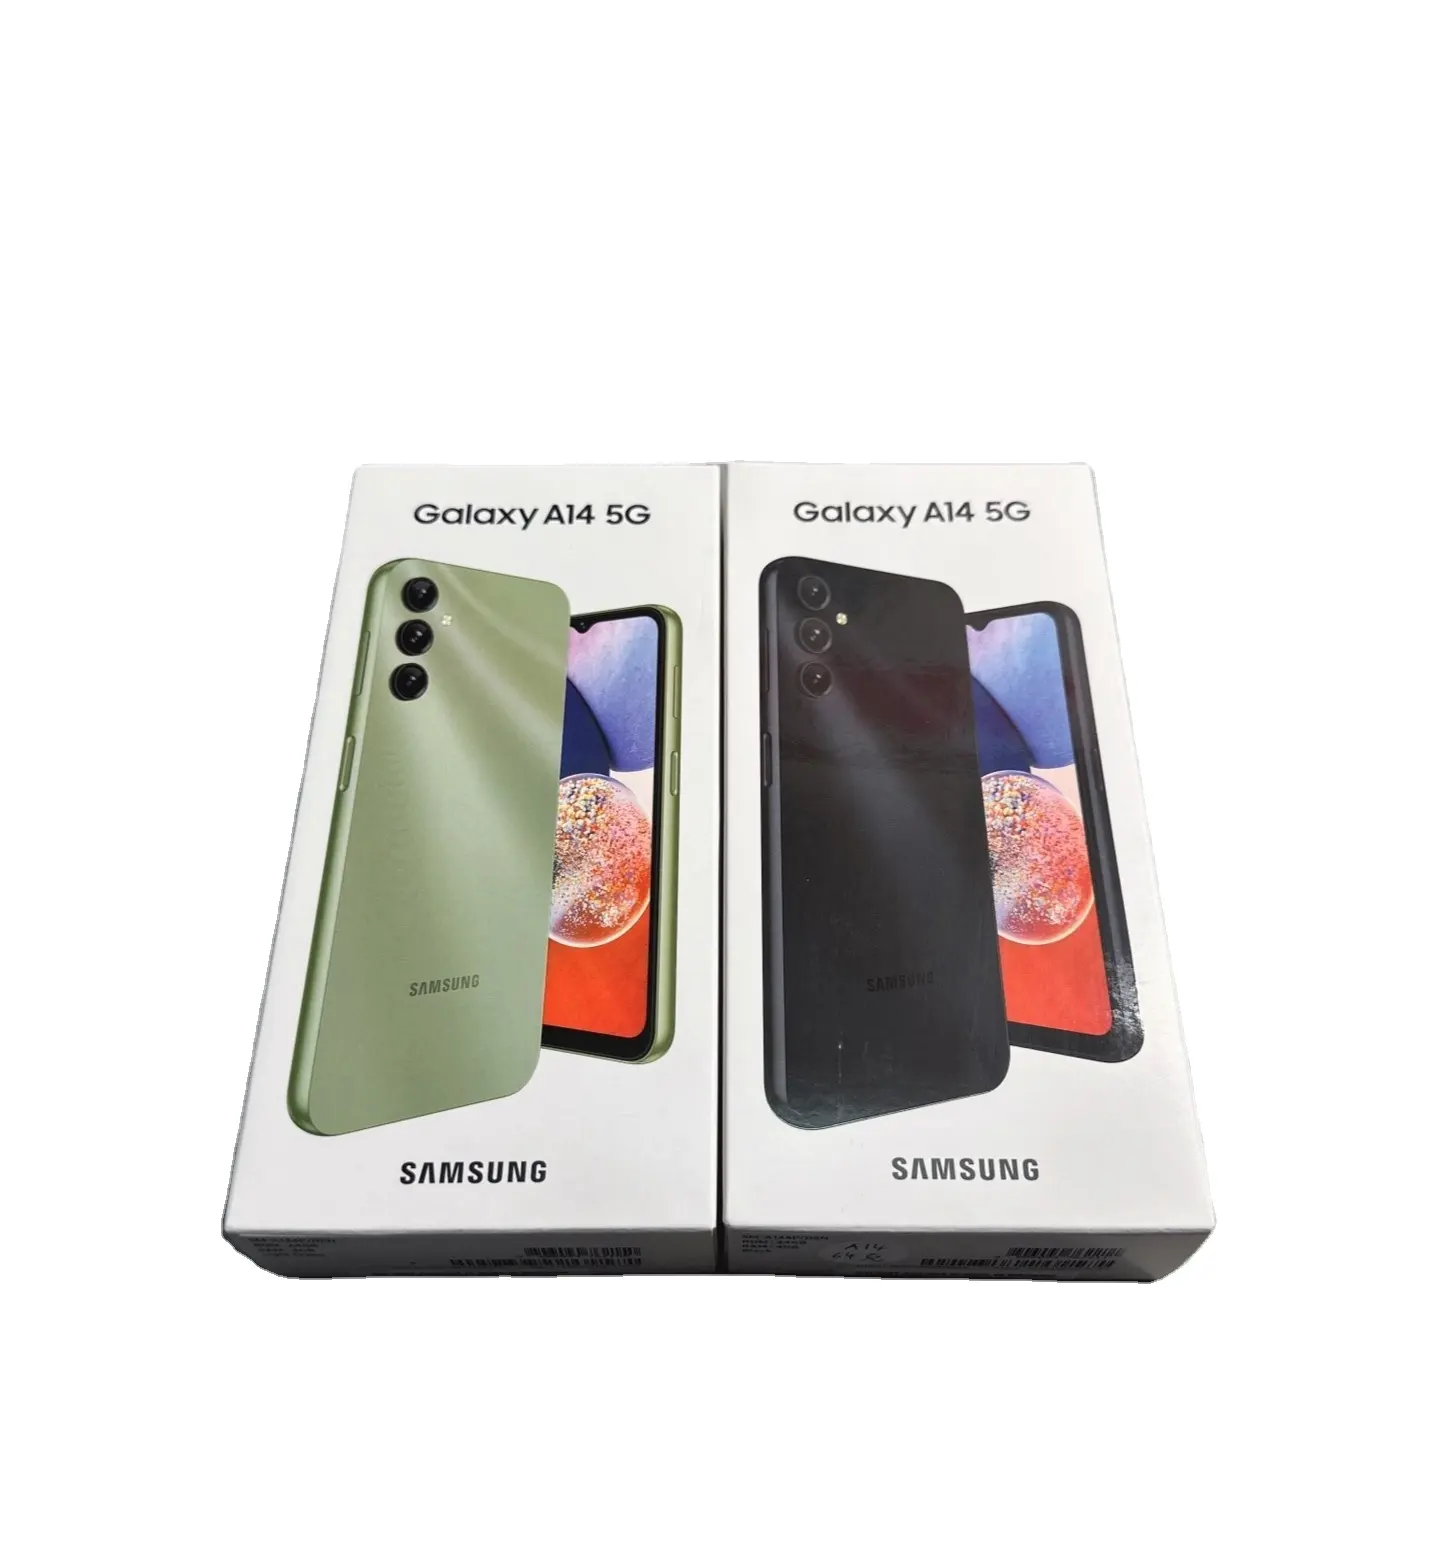 Atacado Original barato telefone android desbloqueado smartphone para Sam sung Galaxy A14 5G dual SIM versão da UE telefones celulares